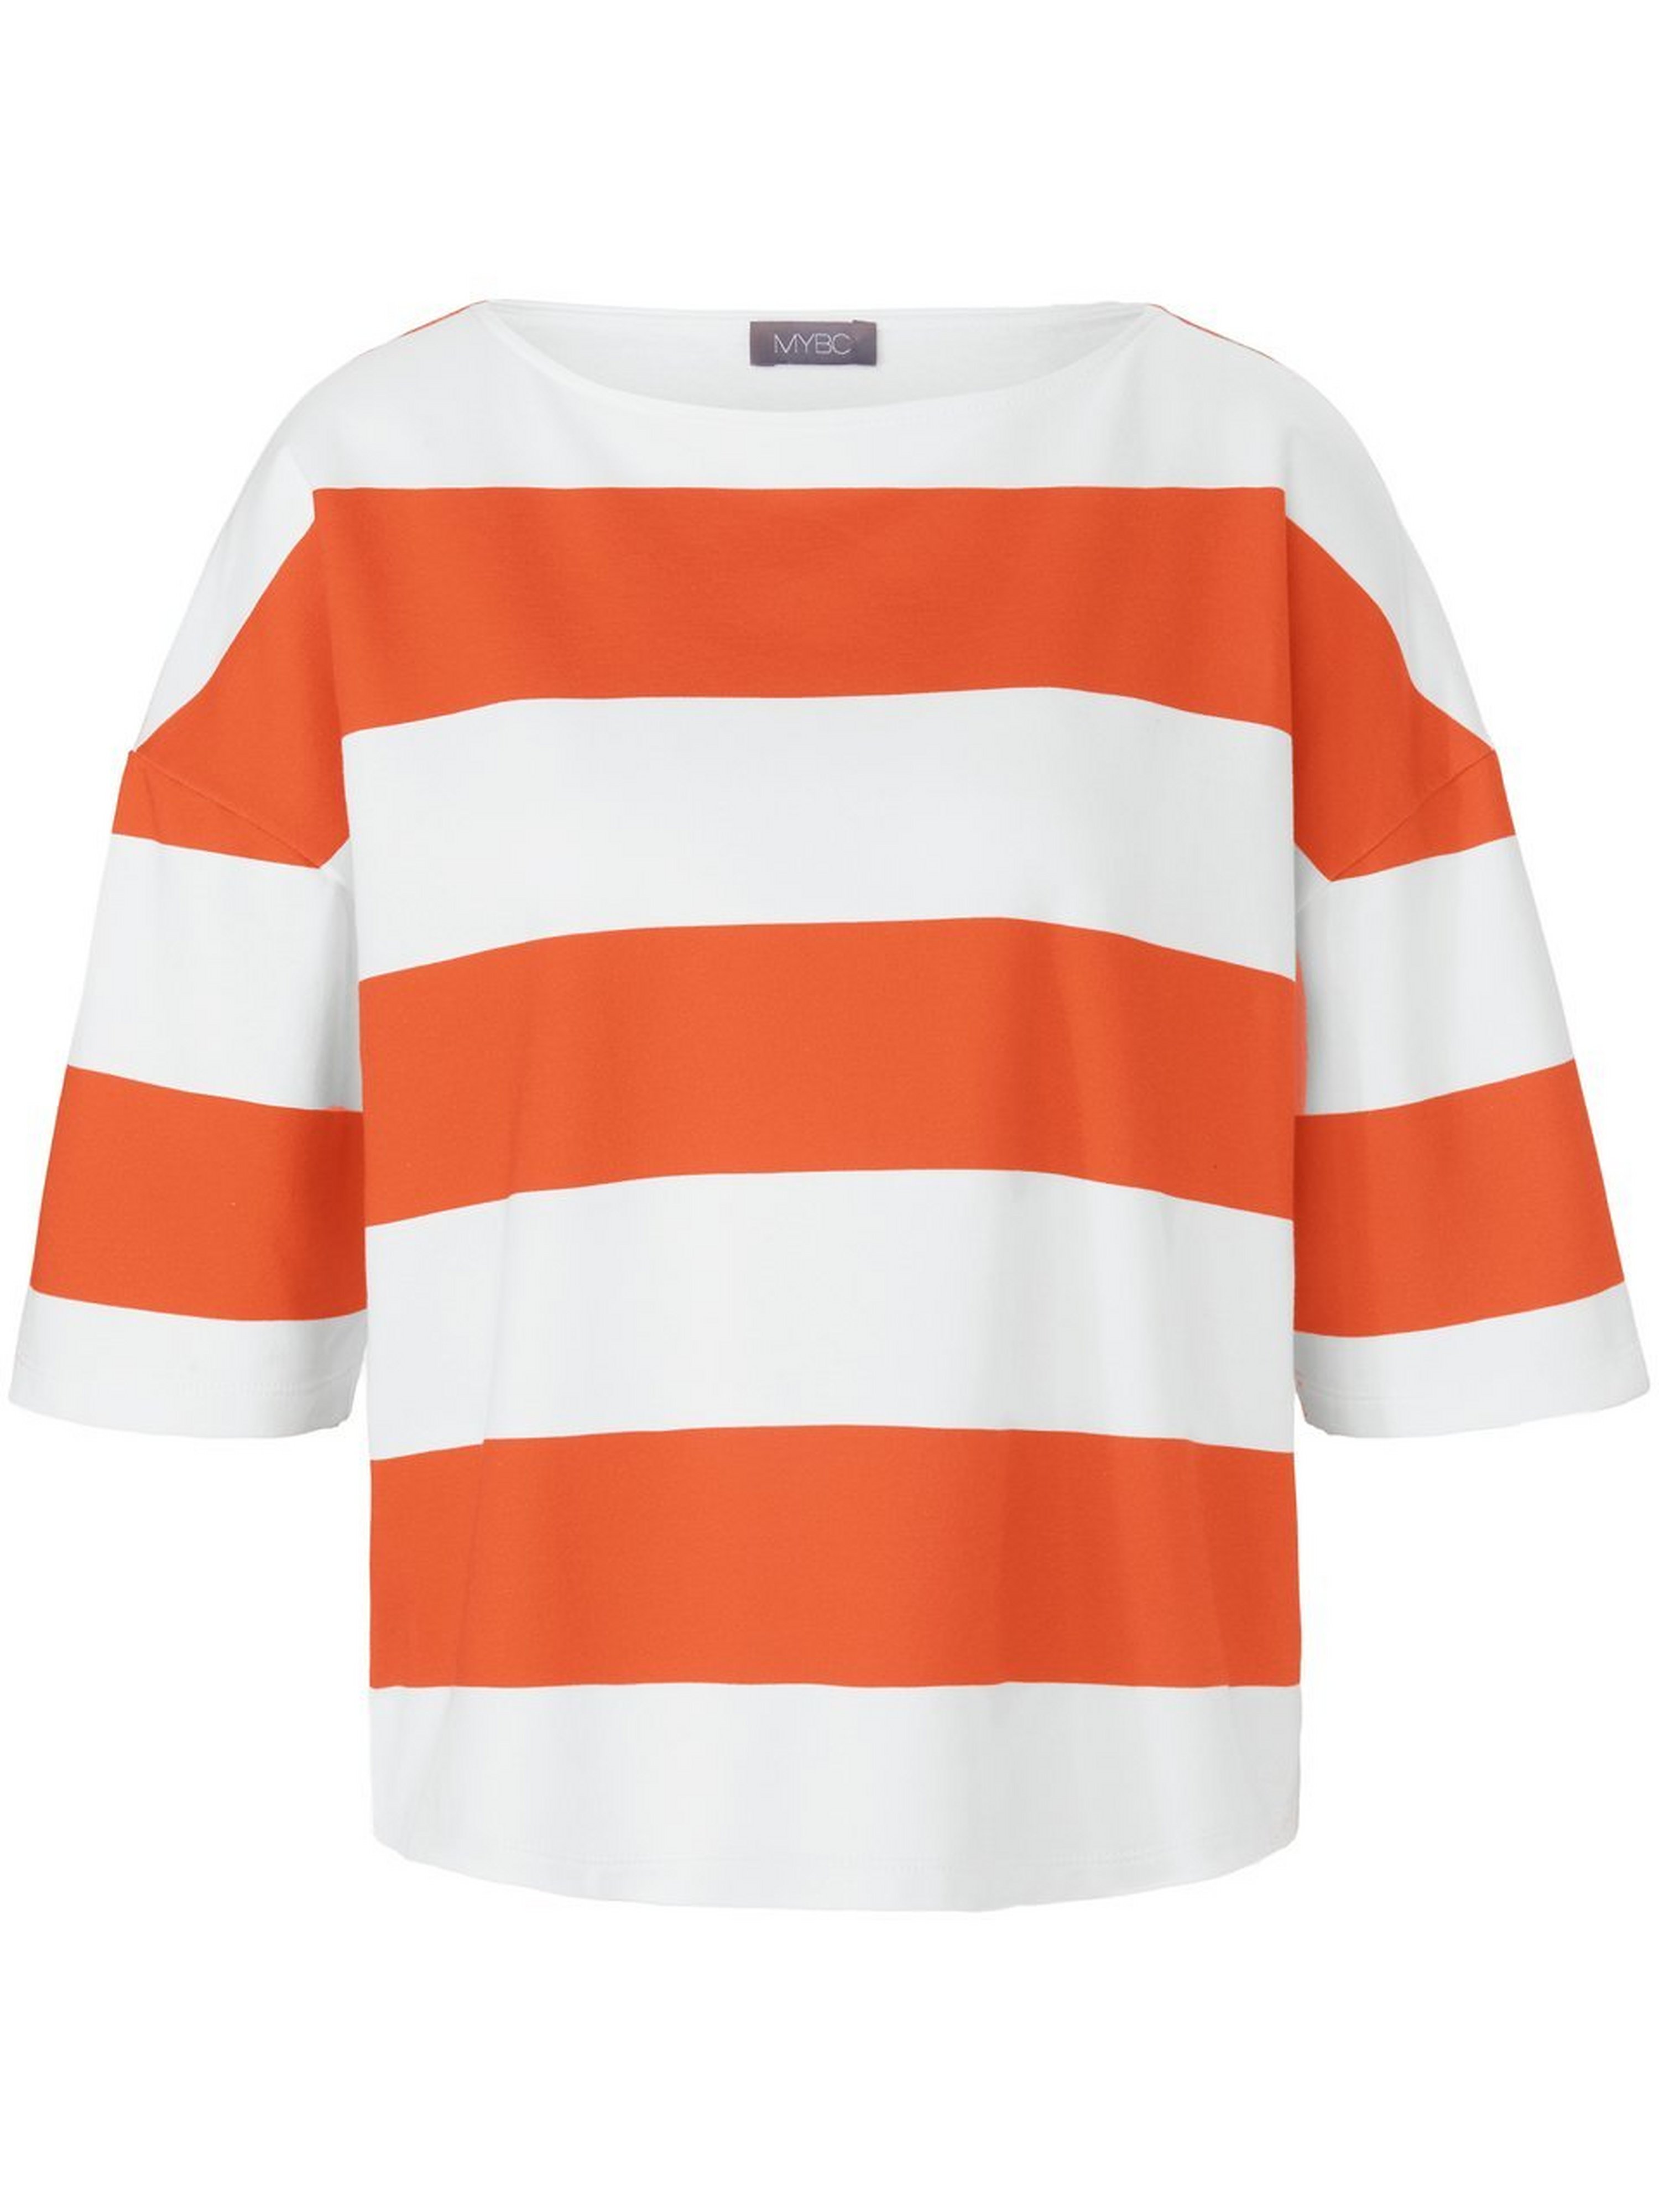 Le sweatshirt man­ches 3/4  MYBC orange